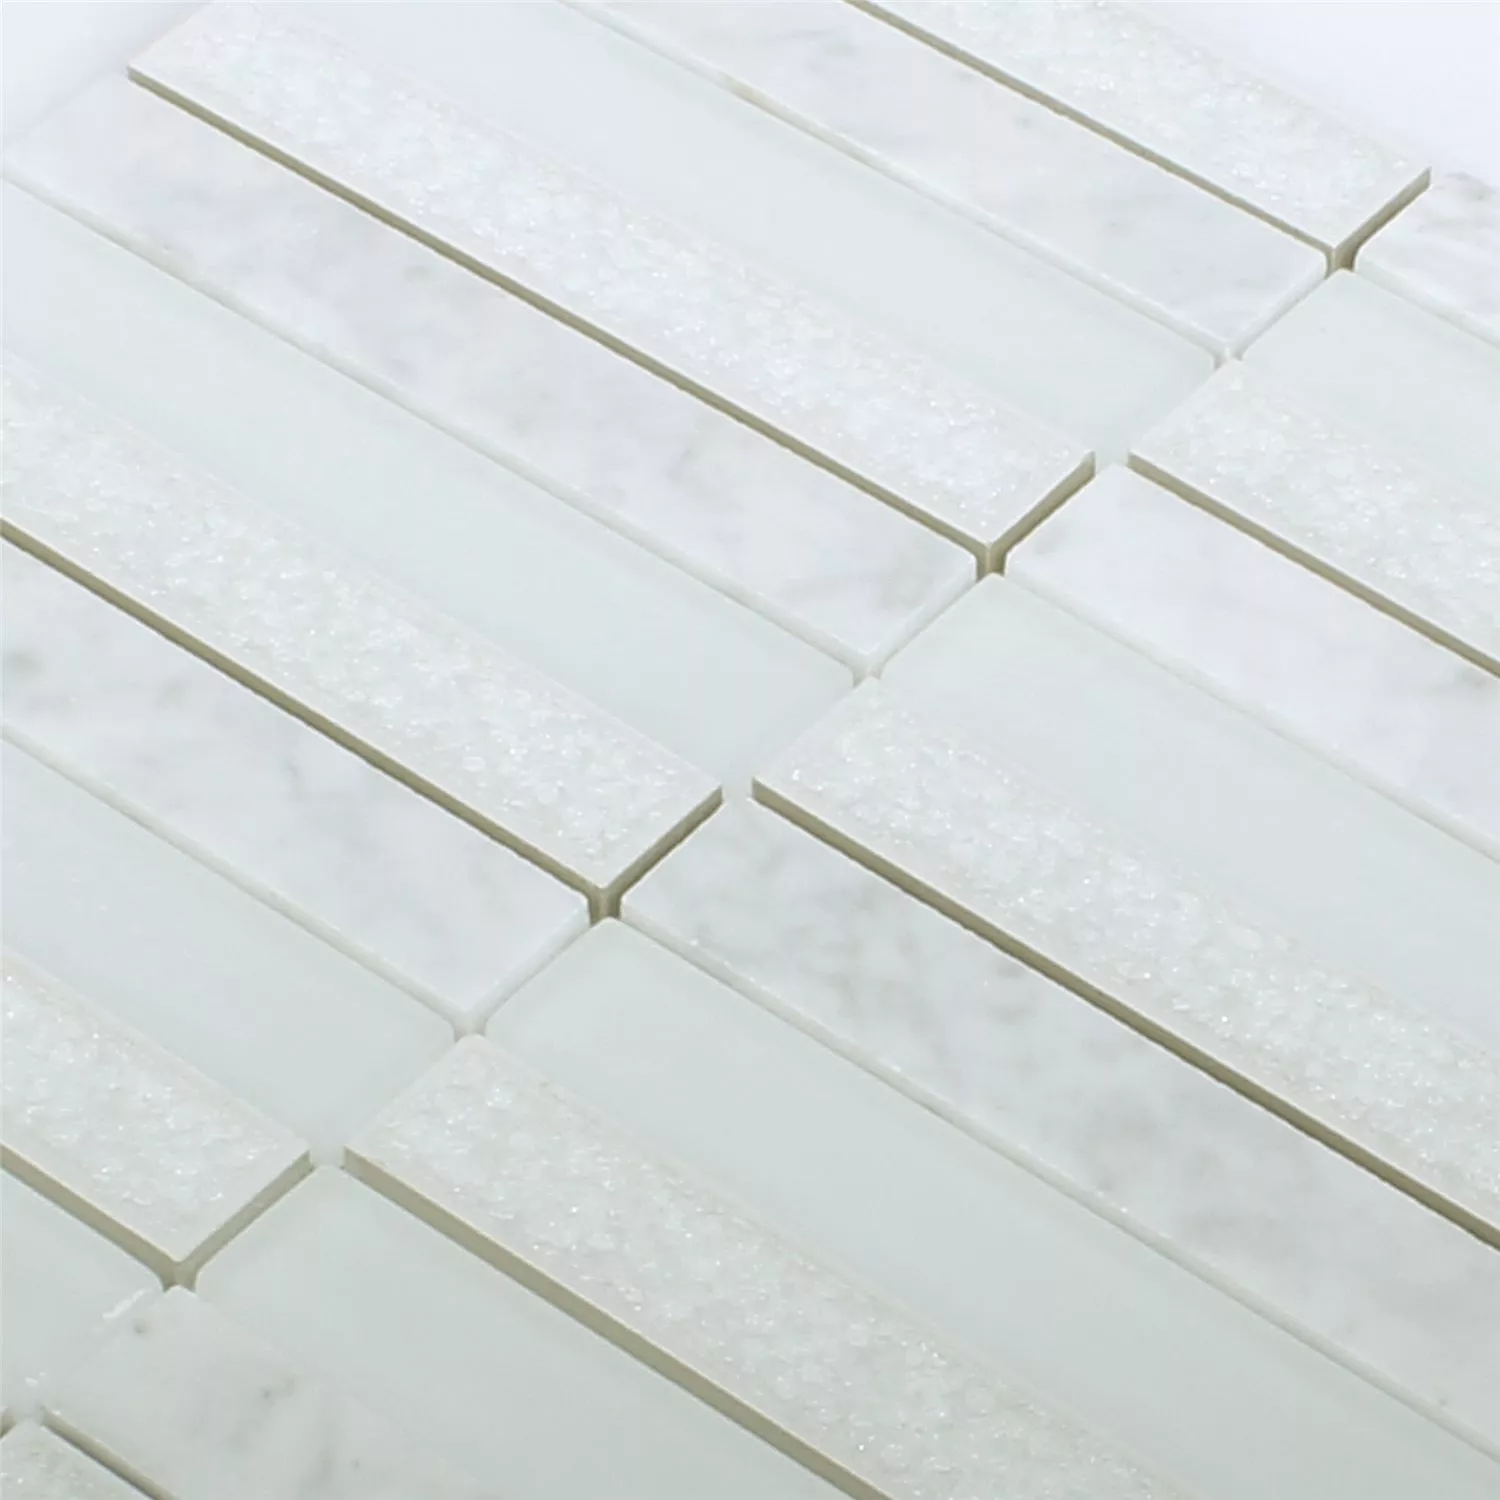 Sample Mosaic Tiles Glass Natural Stone Talinn Arktis White